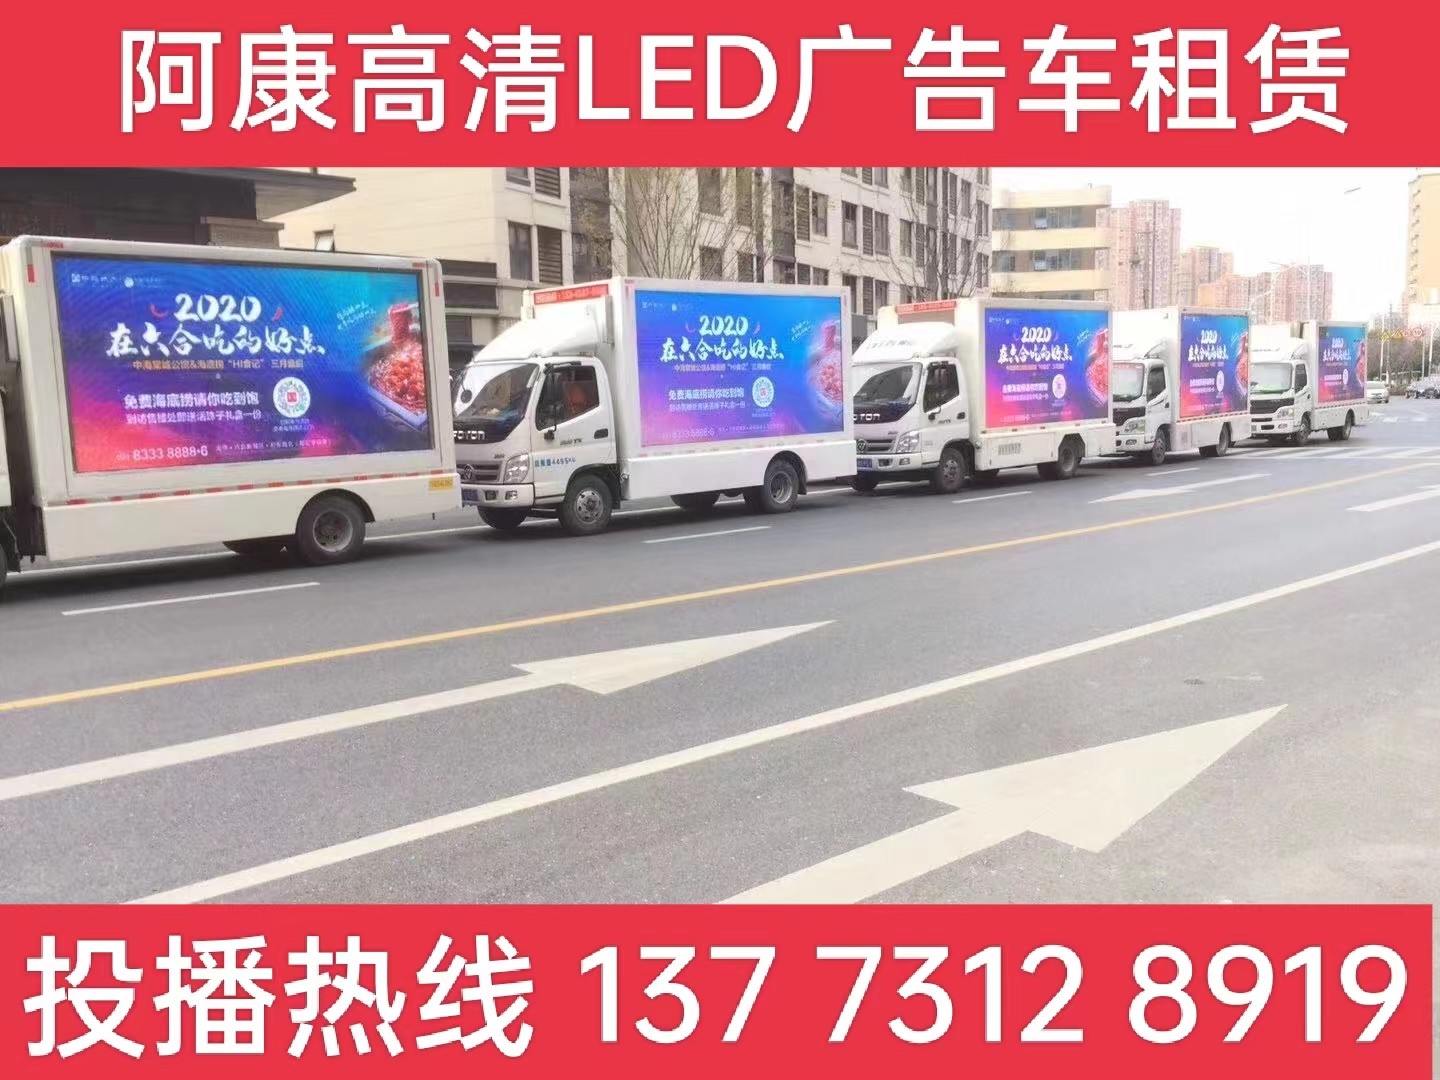  建邺区宣传车出租-海底捞LED广告